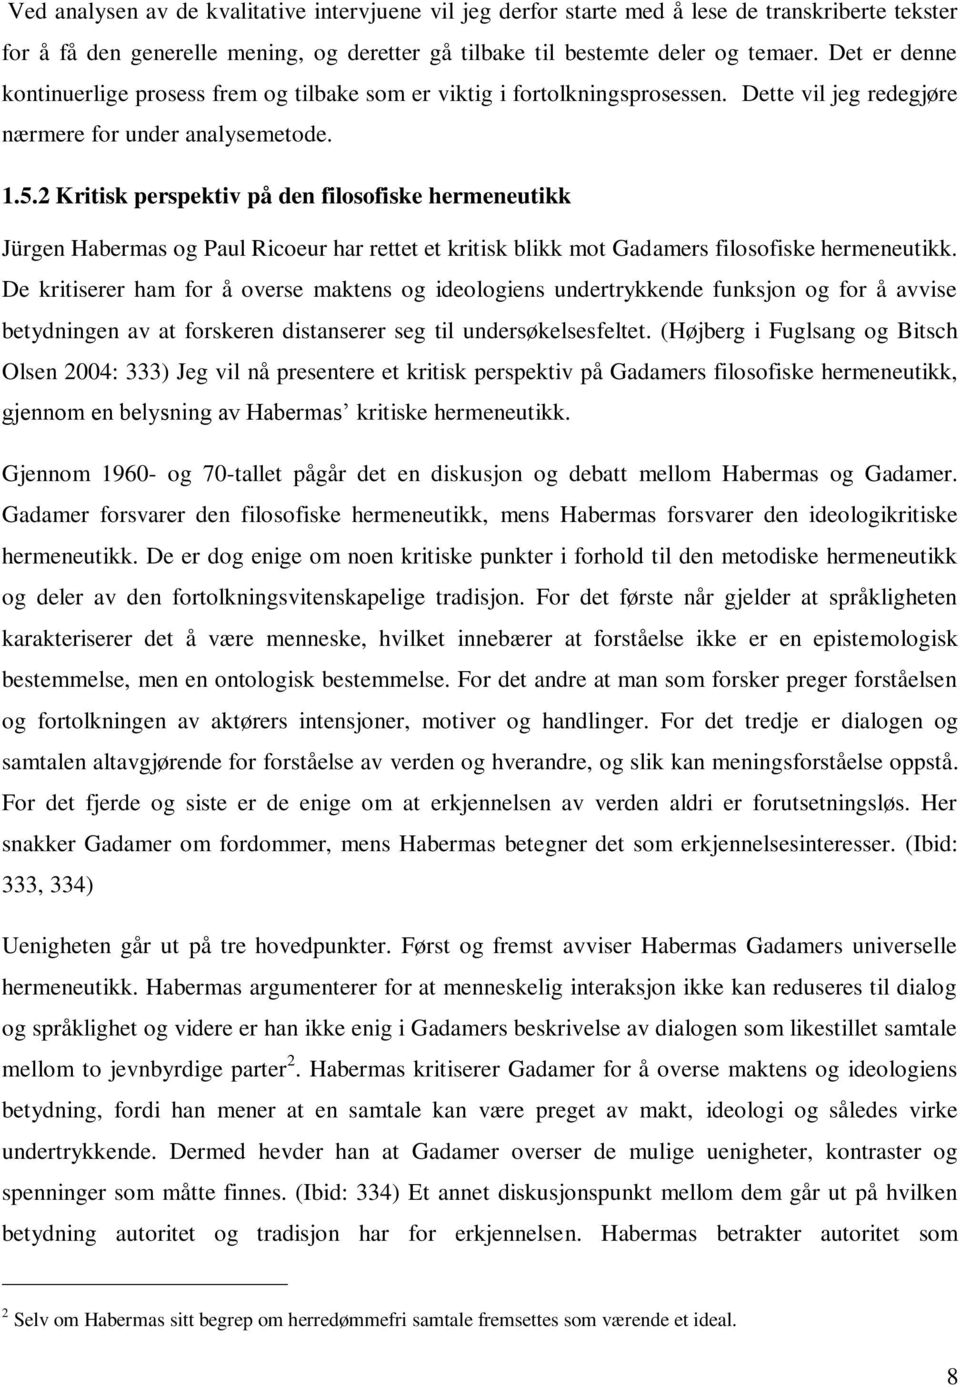 2 Kritisk perspektiv på den filosofiske hermeneutikk Jürgen Habermas og Paul Ricoeur har rettet et kritisk blikk mot Gadamers filosofiske hermeneutikk.